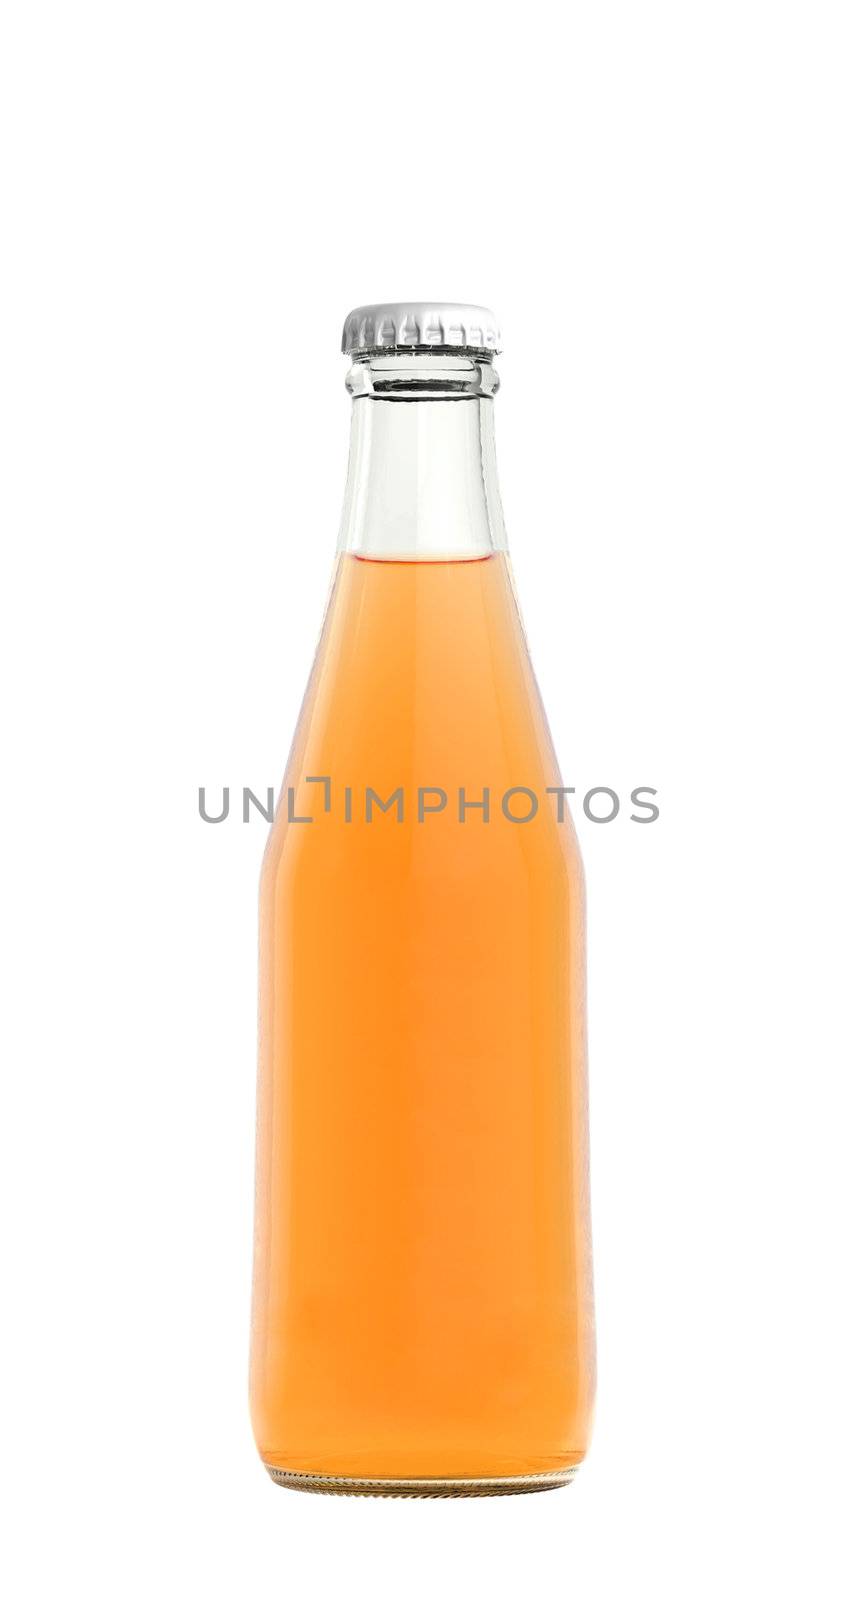 Orange juice drink in glass bottle by ozaiachin